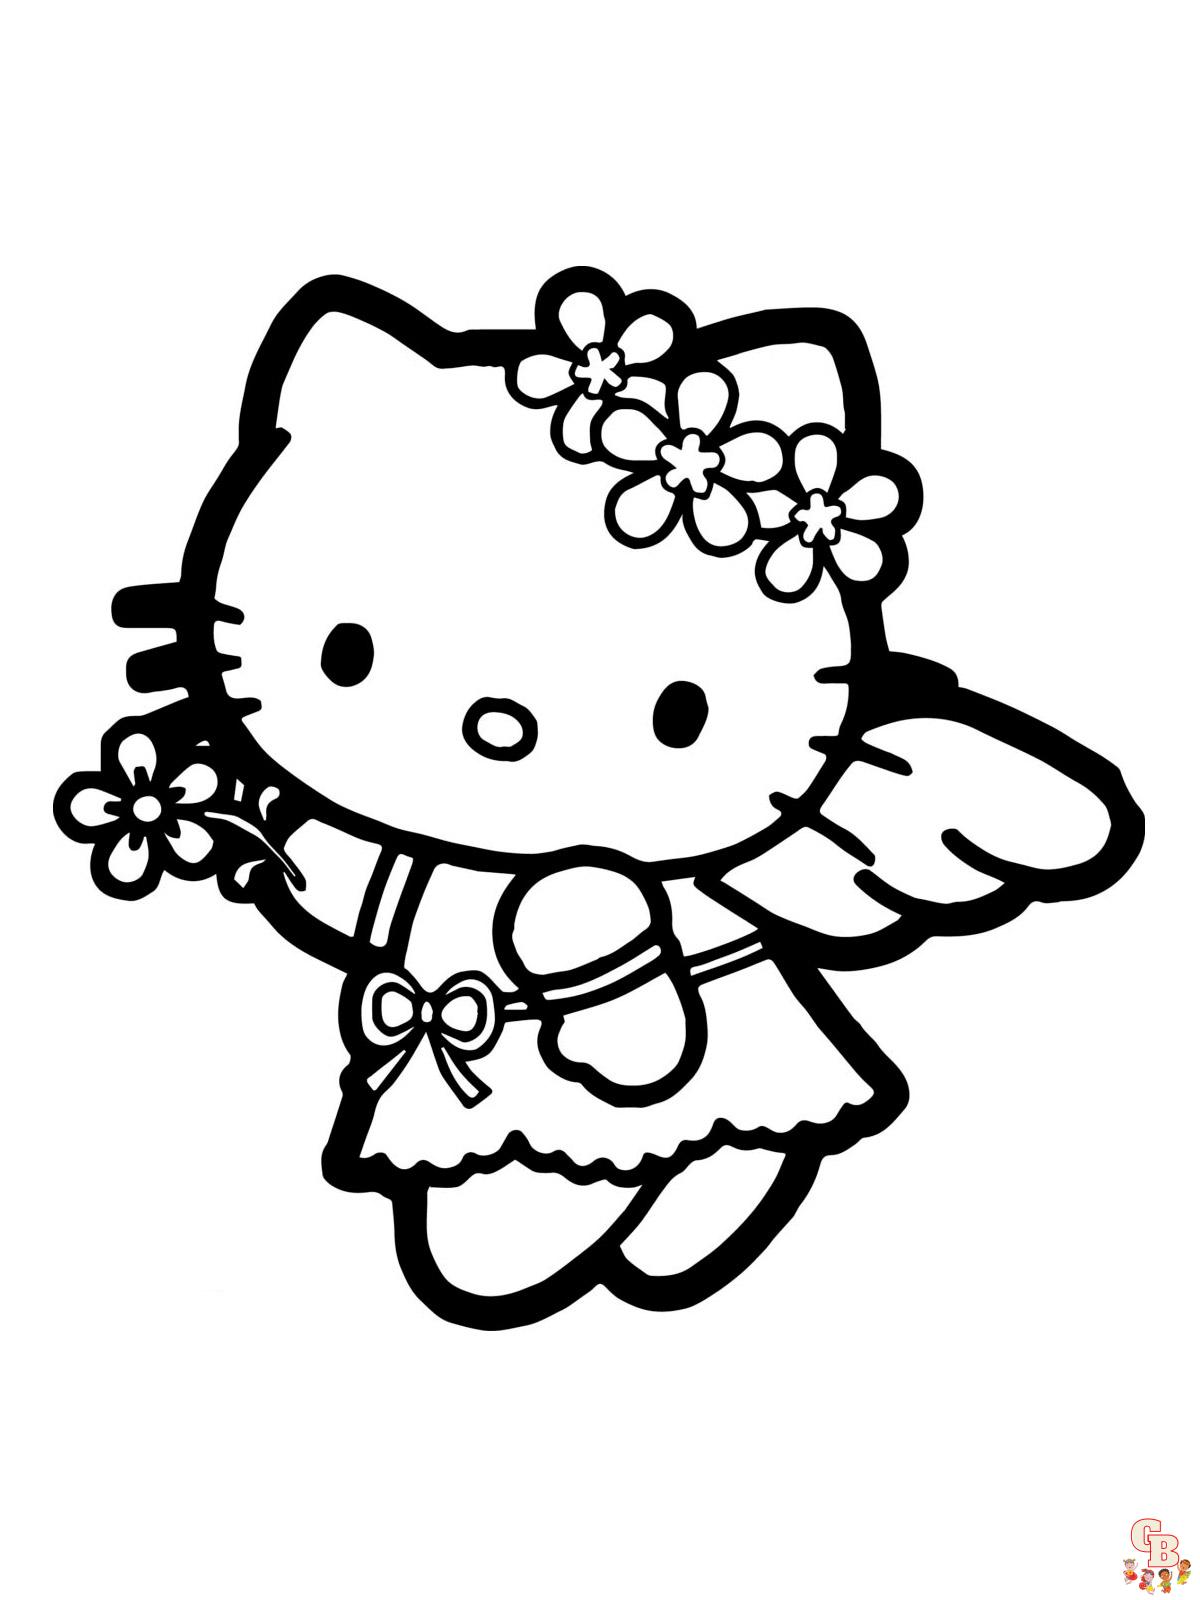 Ausmalbilder Hello Kitty 11